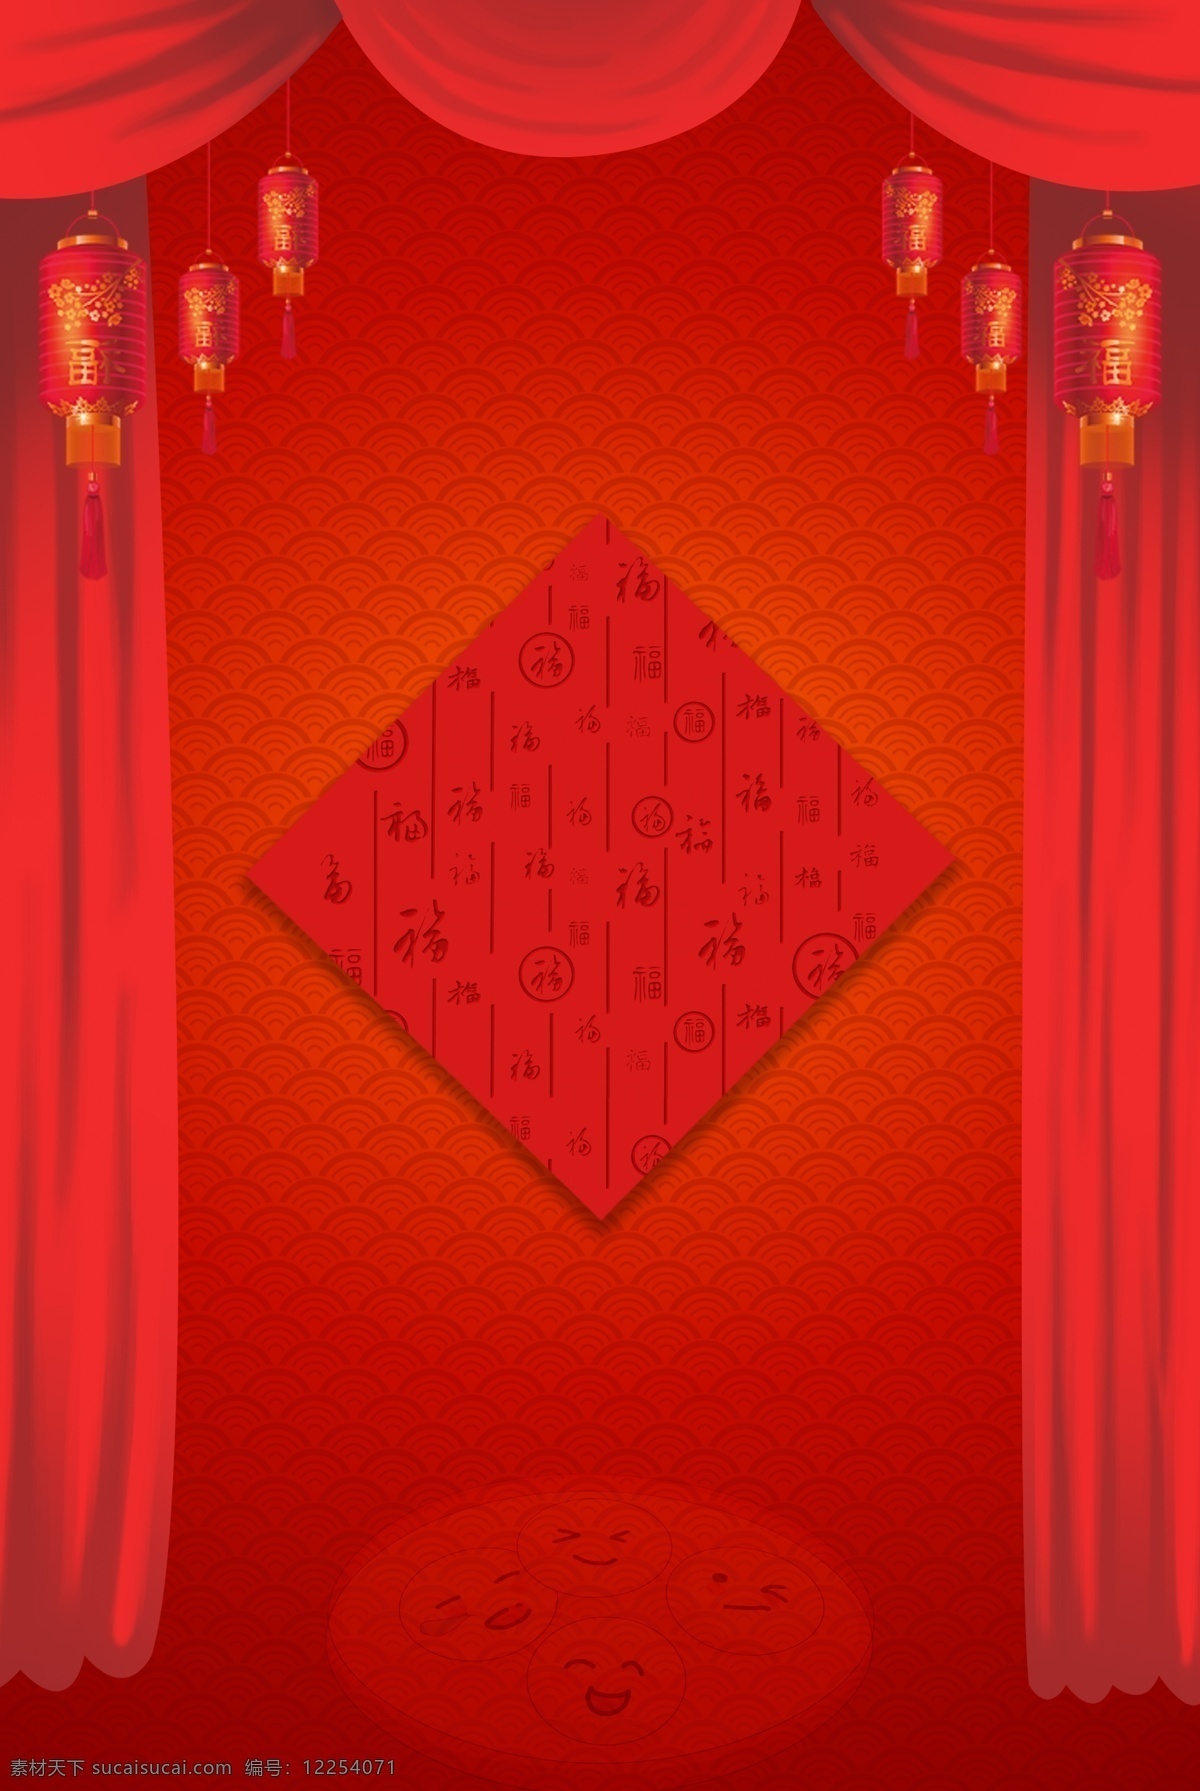 元宵节 红色 纹理 海报 背景 春节 元旦 纹理背景 福字 帘子 灯笼 节日 传统